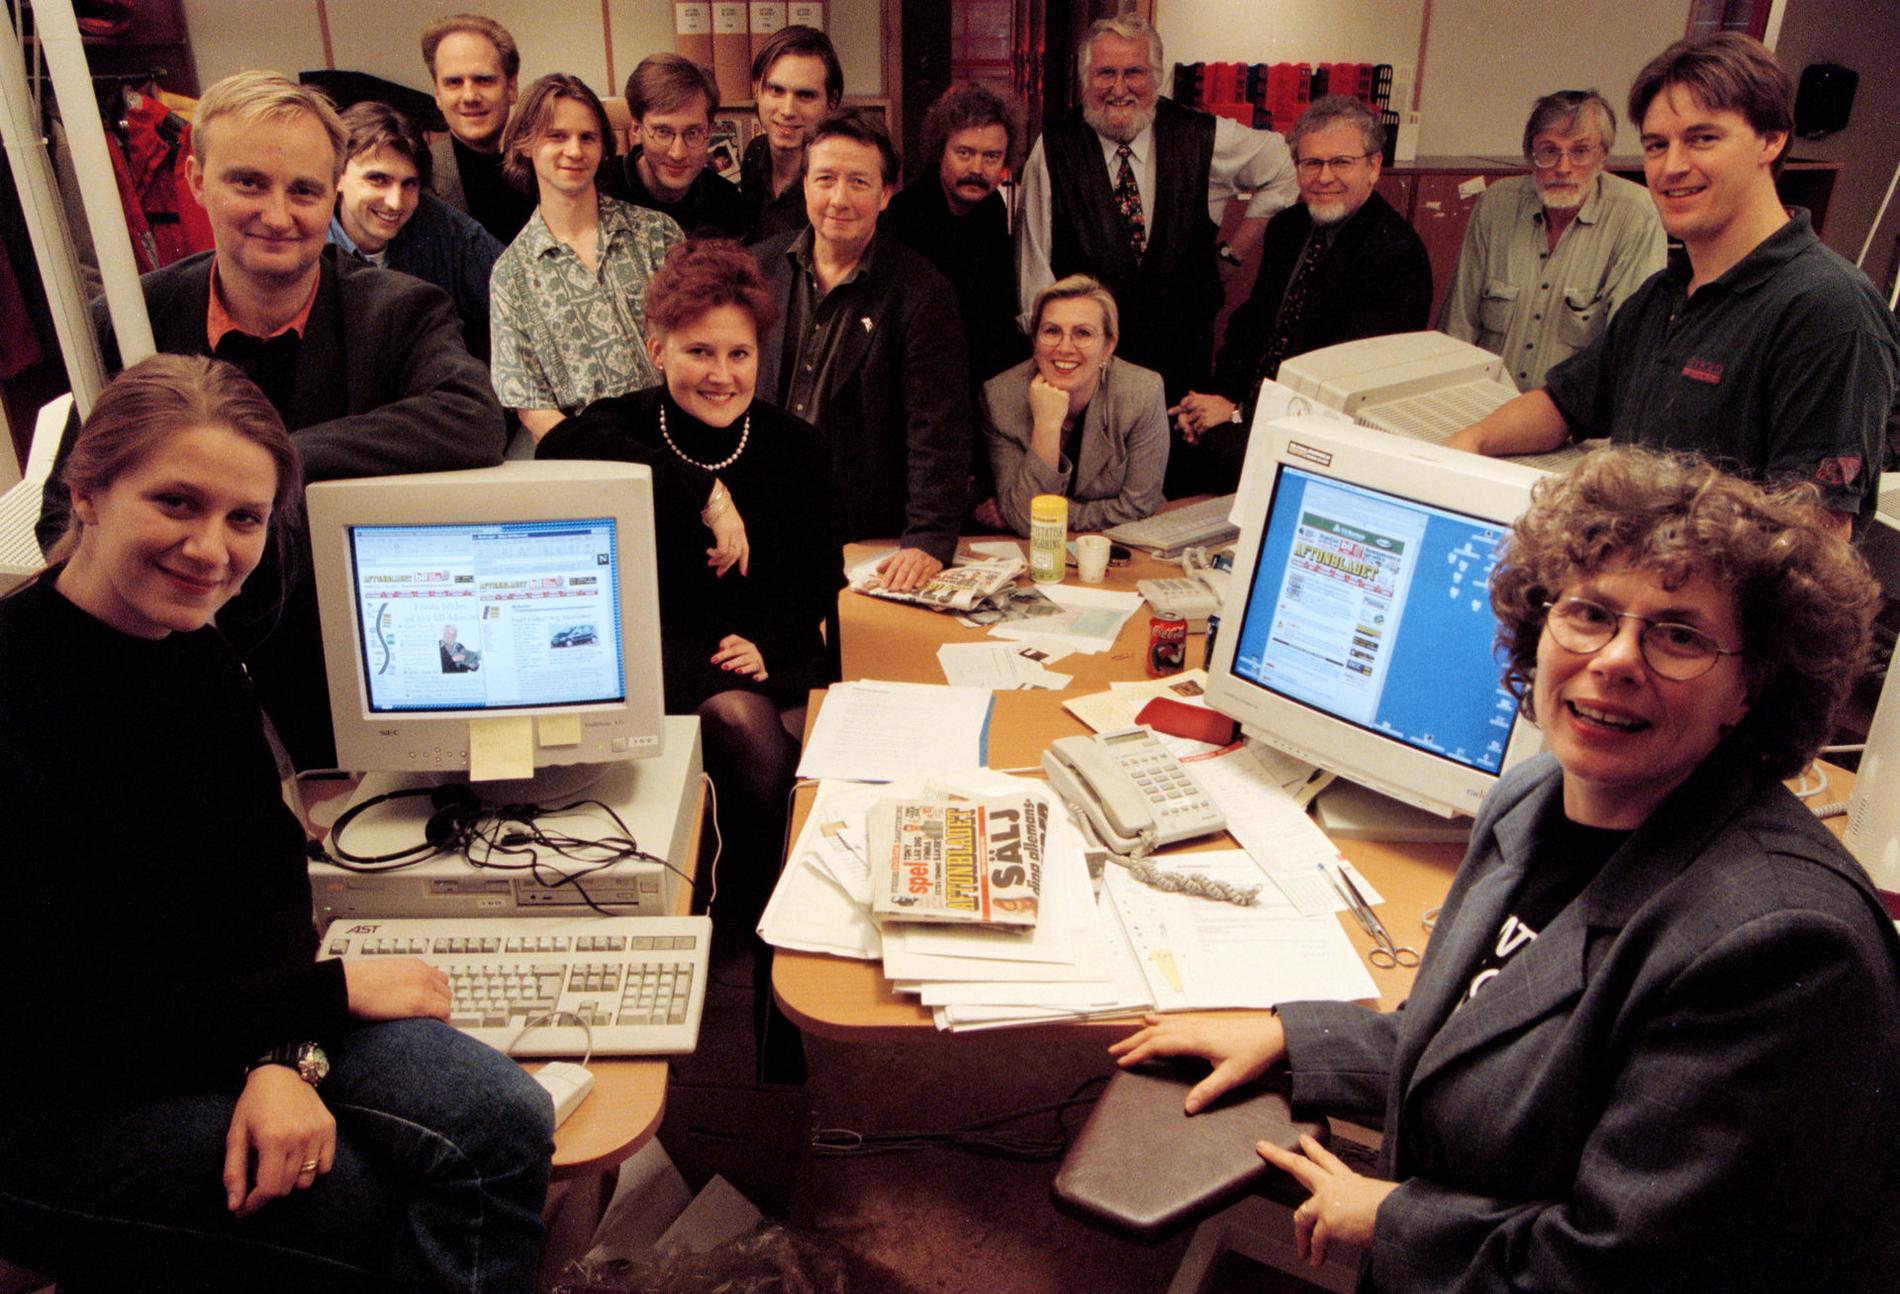 1996 Aftonbladet tar steget ut på nätet redan den 25 augusti 1994. Mycket har hänt på teknikfronten sedan den här bilden togs i december 1996.